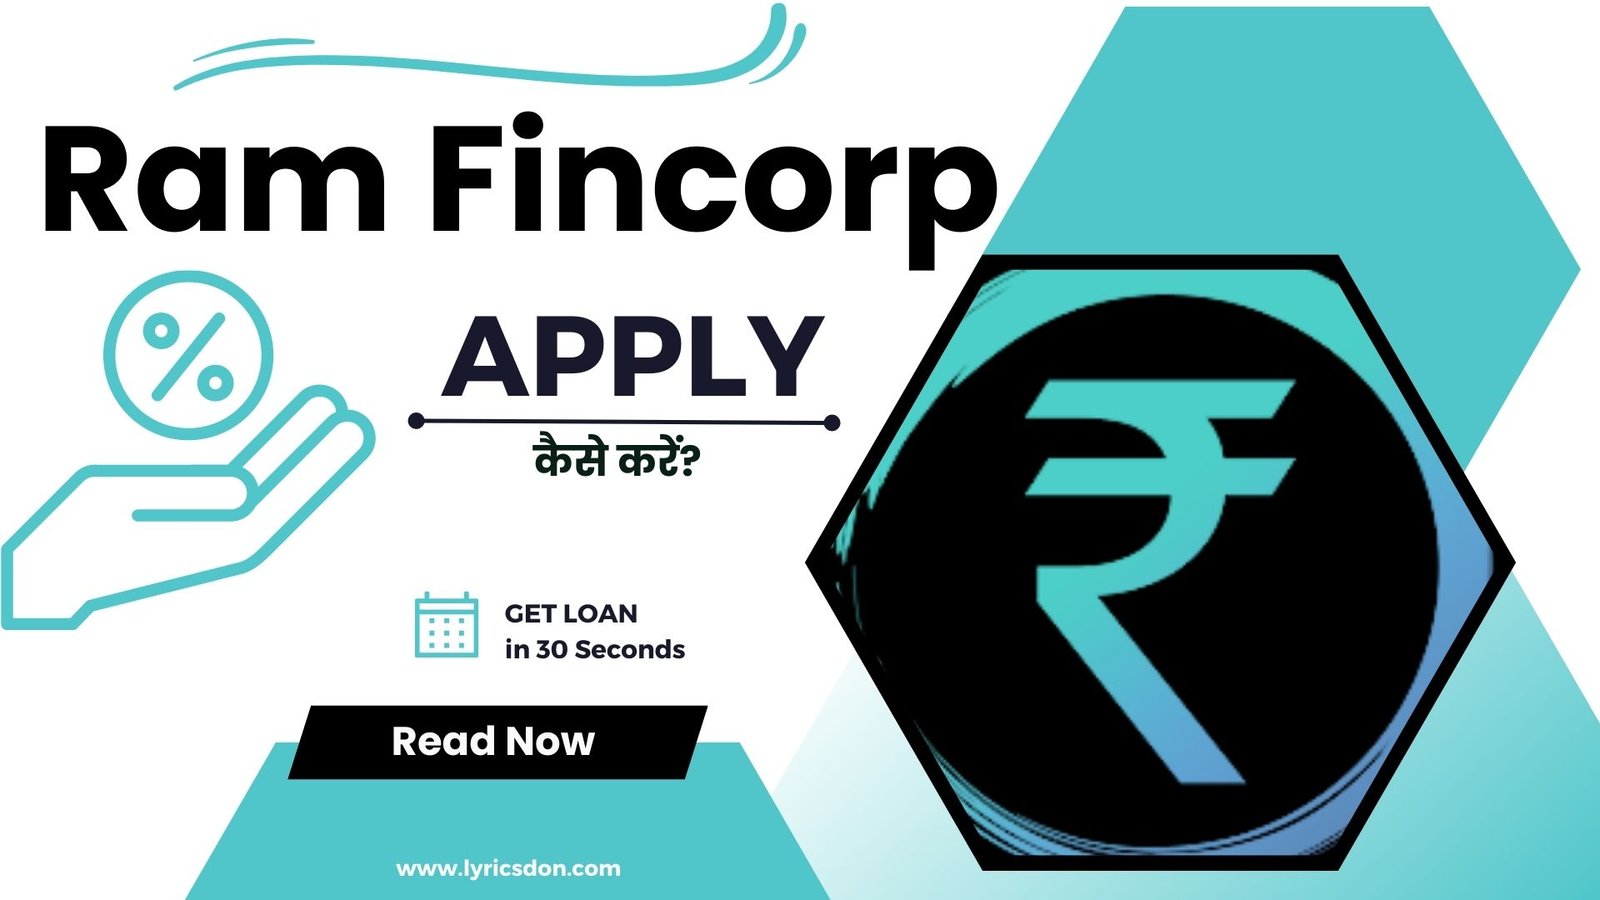 Ram Fincorp Loan App से लोन कैसे लें?